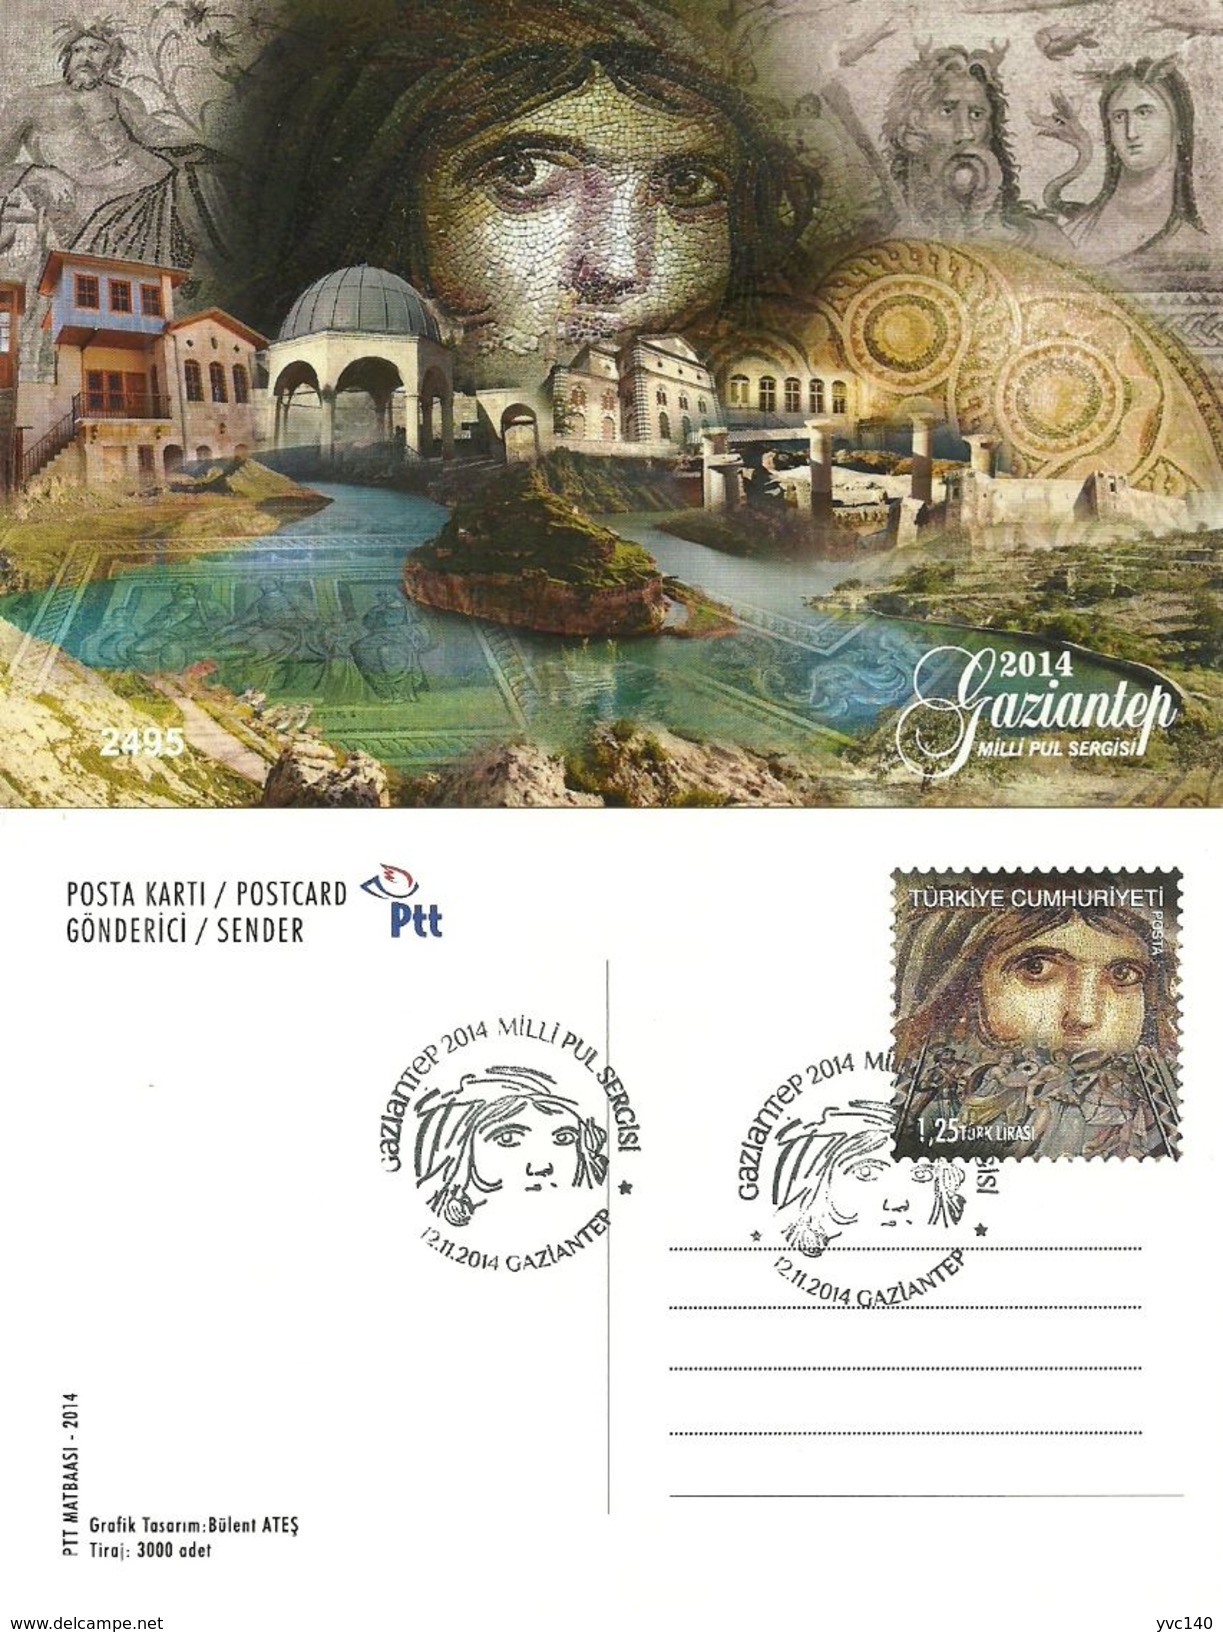 Turkey; 2014 "National Stamp Exhibition, Gaziantep" Special Portfolio - Ganzsachen